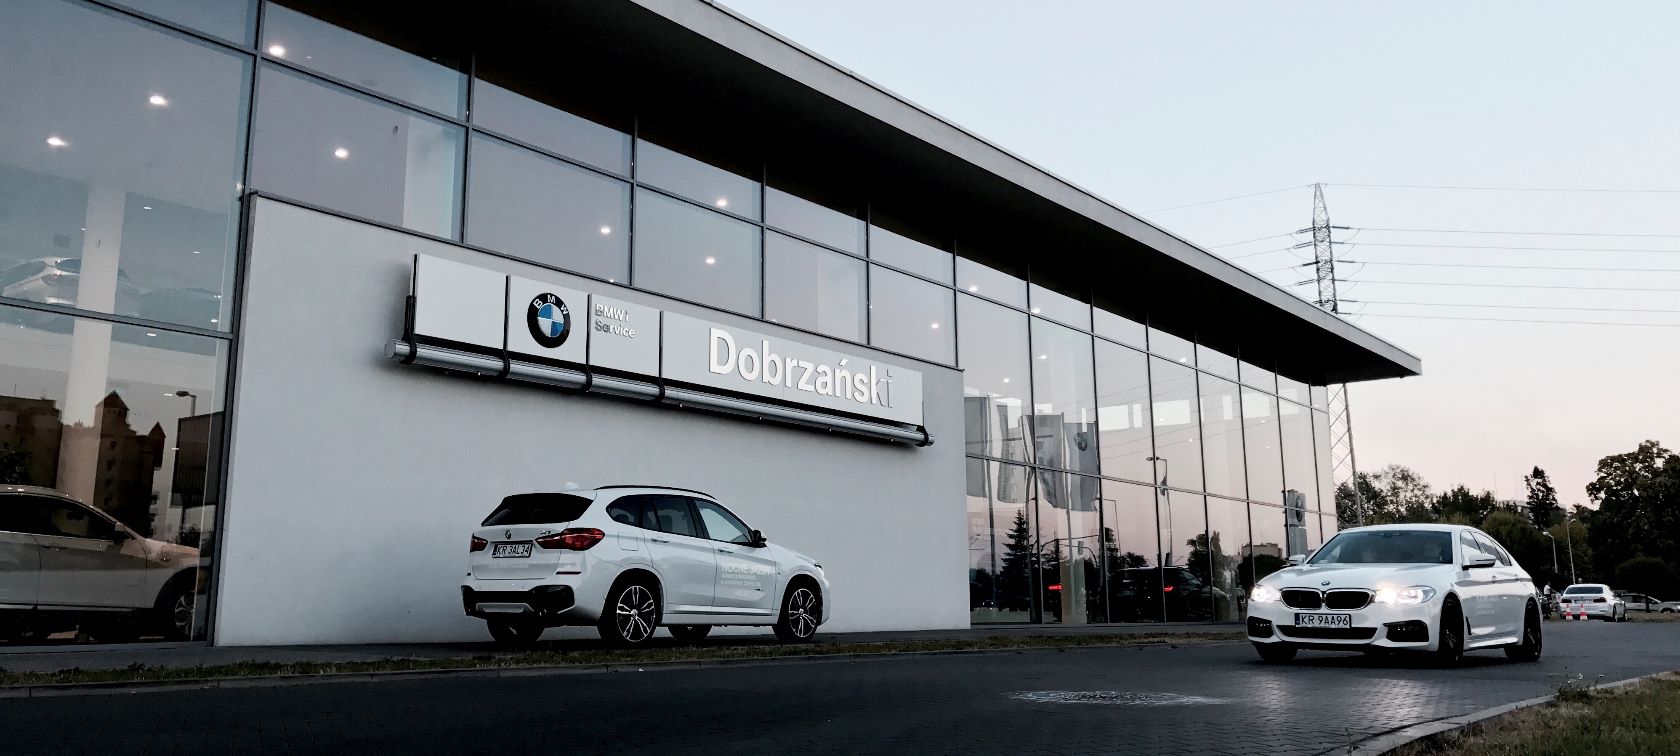 Relacja z wydarzenia. Dealer BMW Dobrzański Kraków